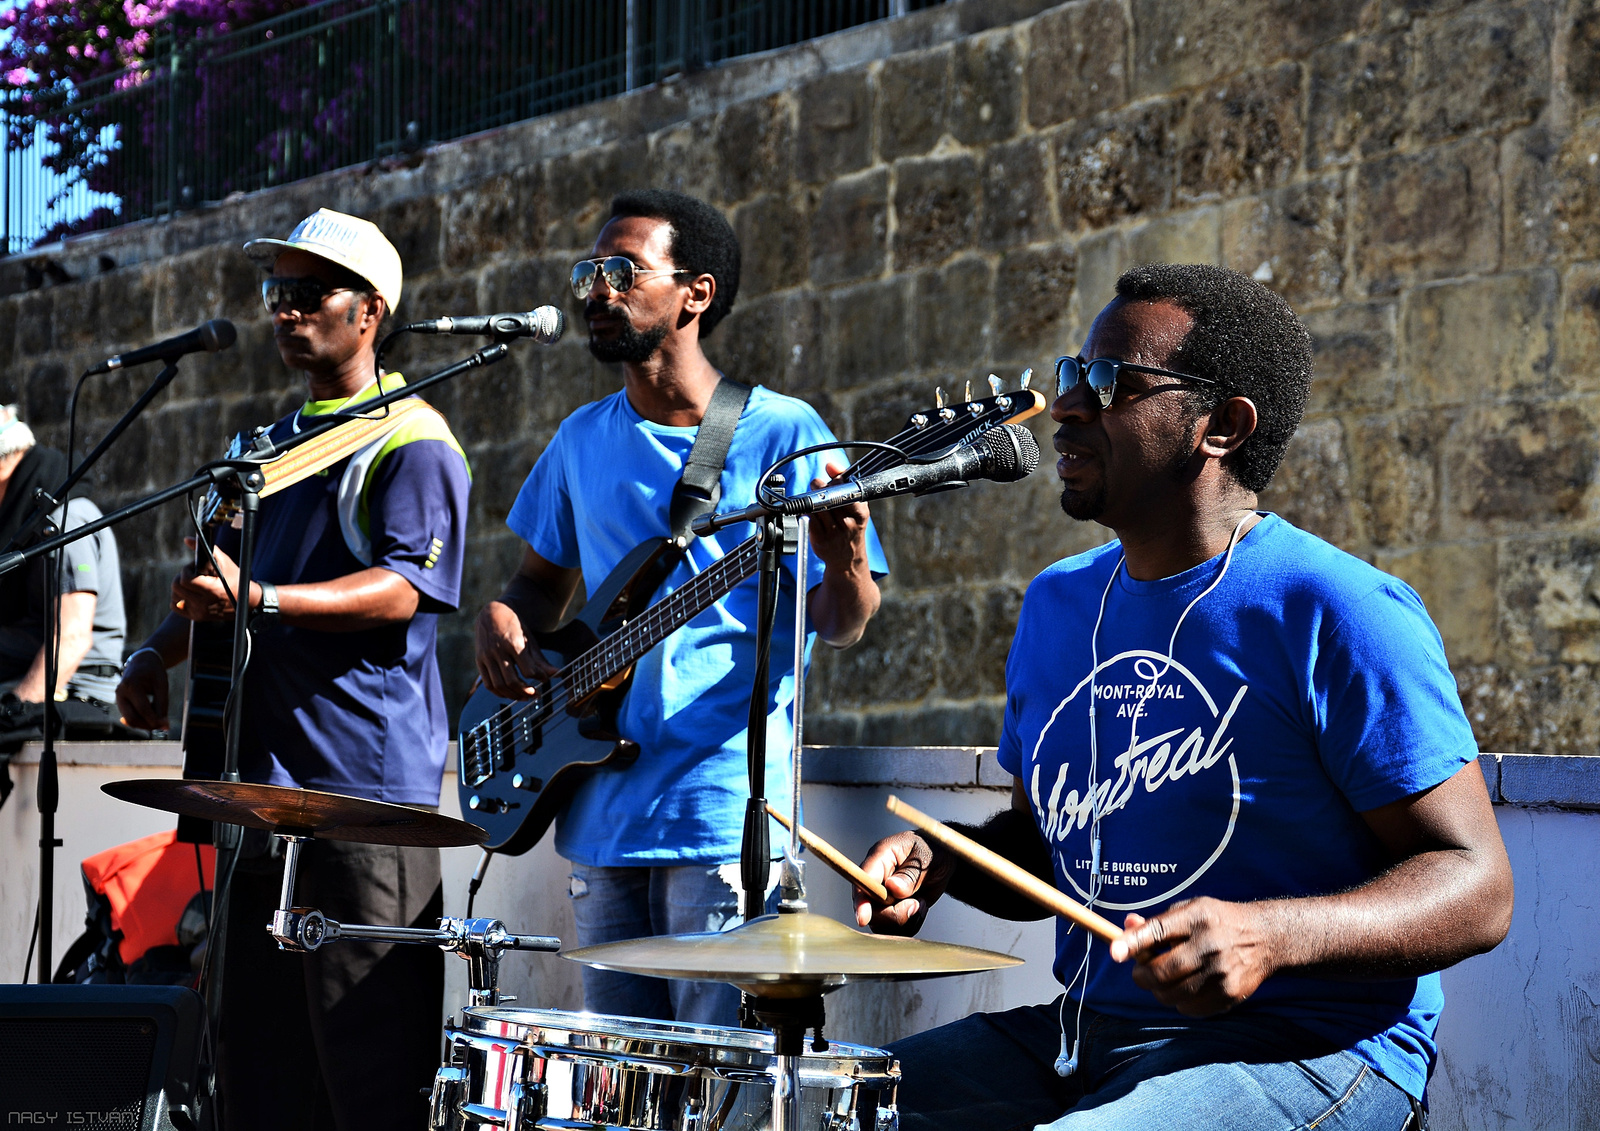 Lisszabon - Street Musicians 2879